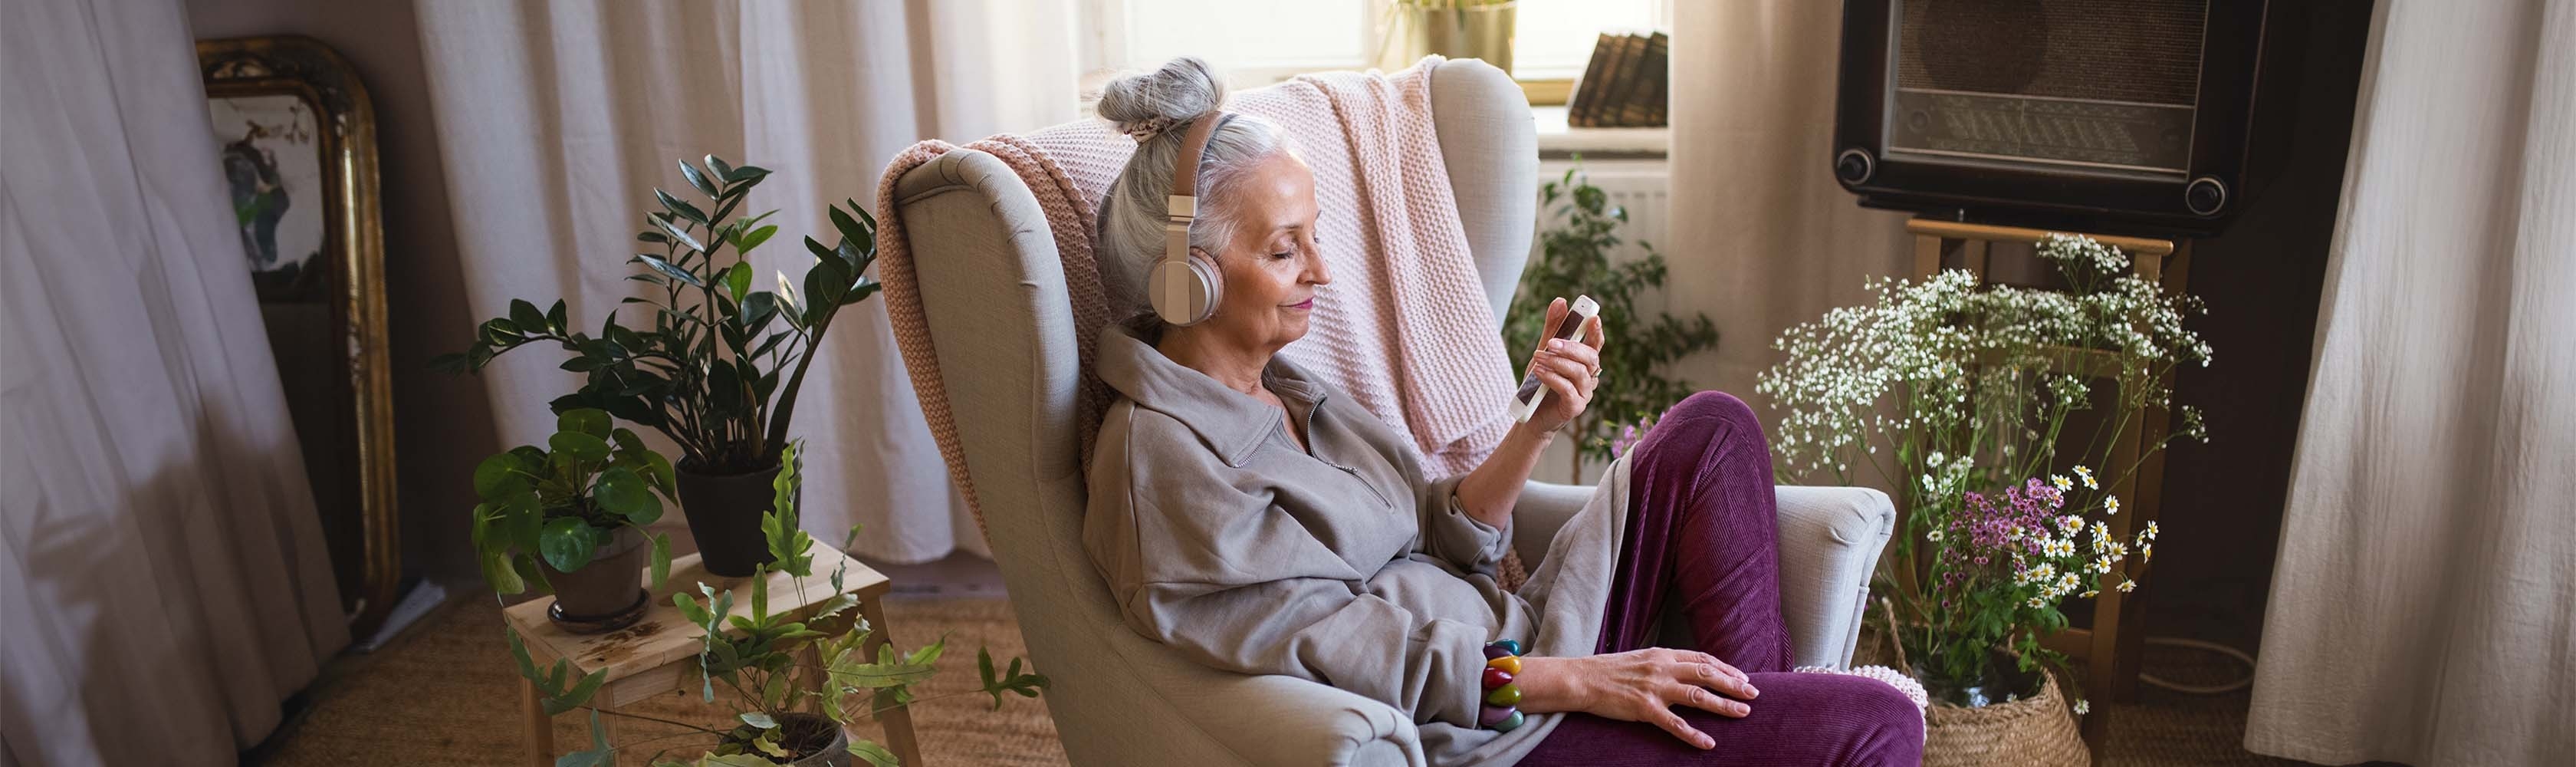 Assise dans un fauteuil dans son salon, une femme d’un certain âge écoute un podcast santé.